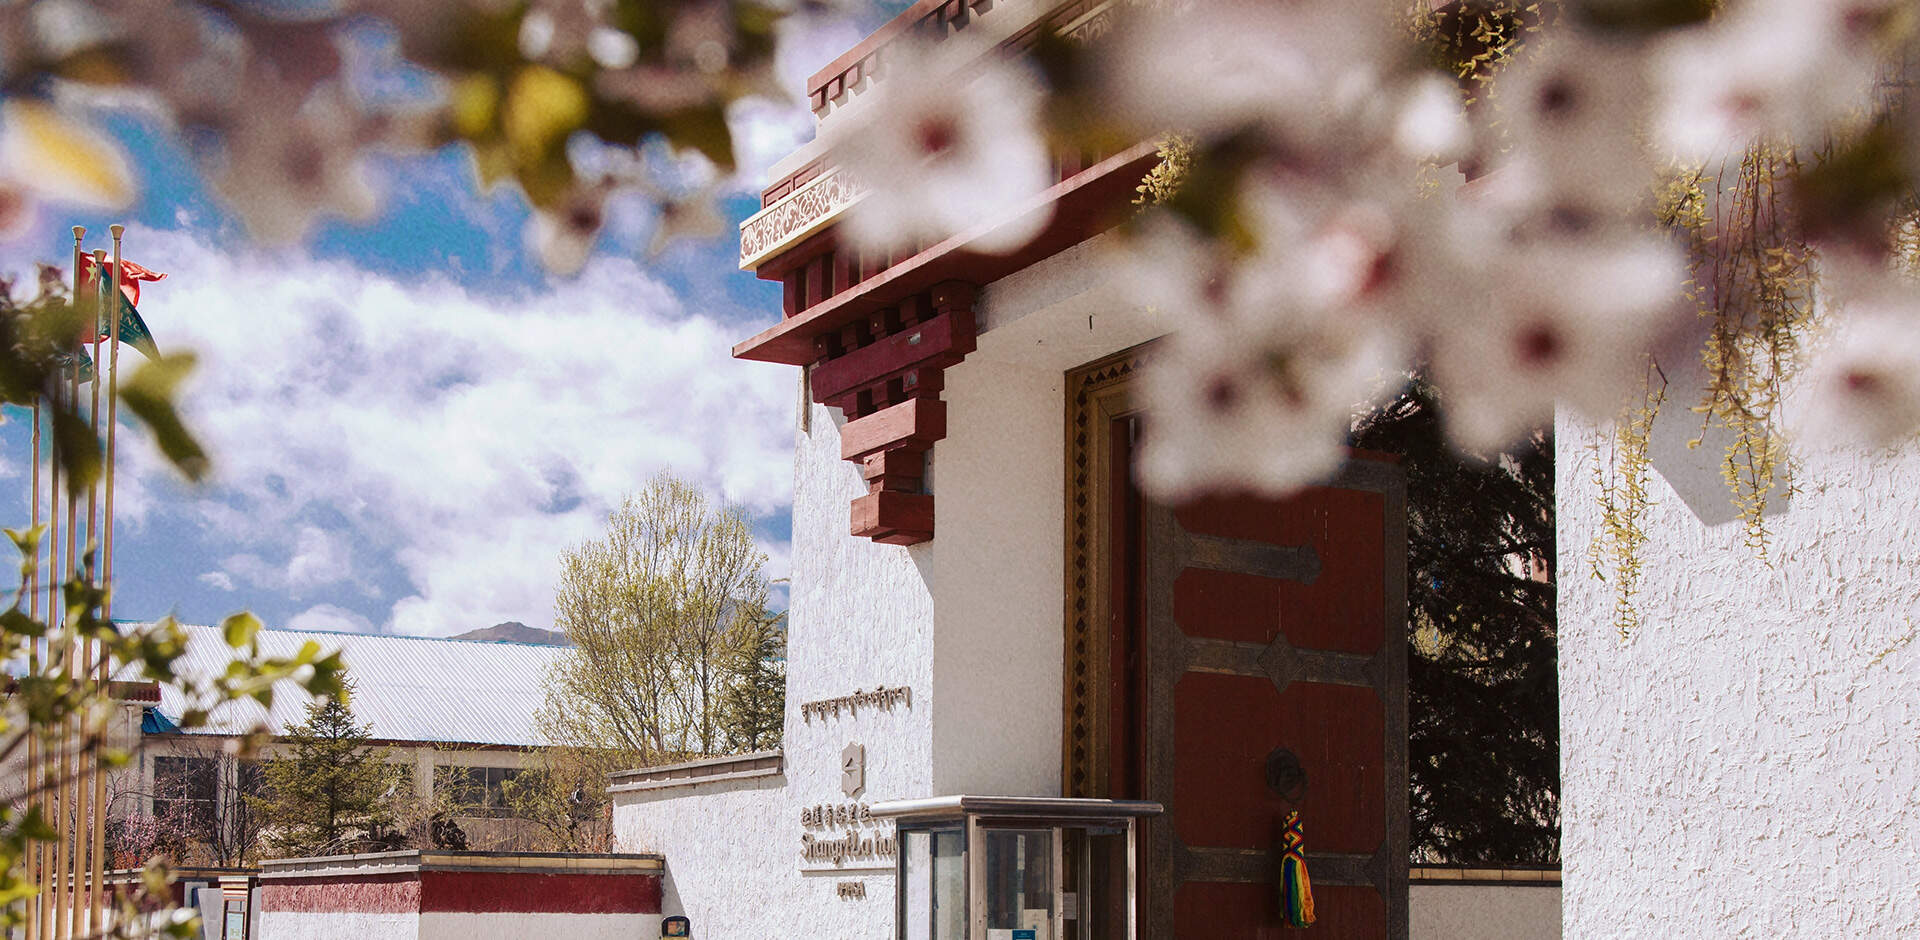 Explore Lhasa